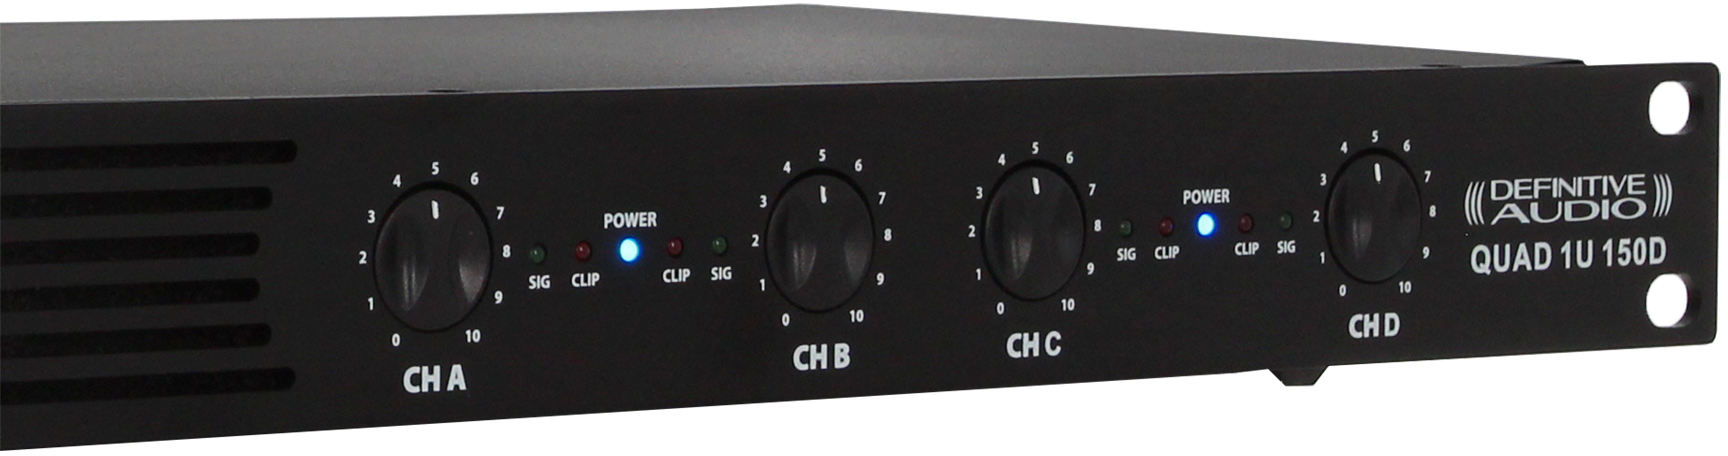 Definitive Audio Quad 1u 150d - Etapa final de potencia de varios canales - Variation 3